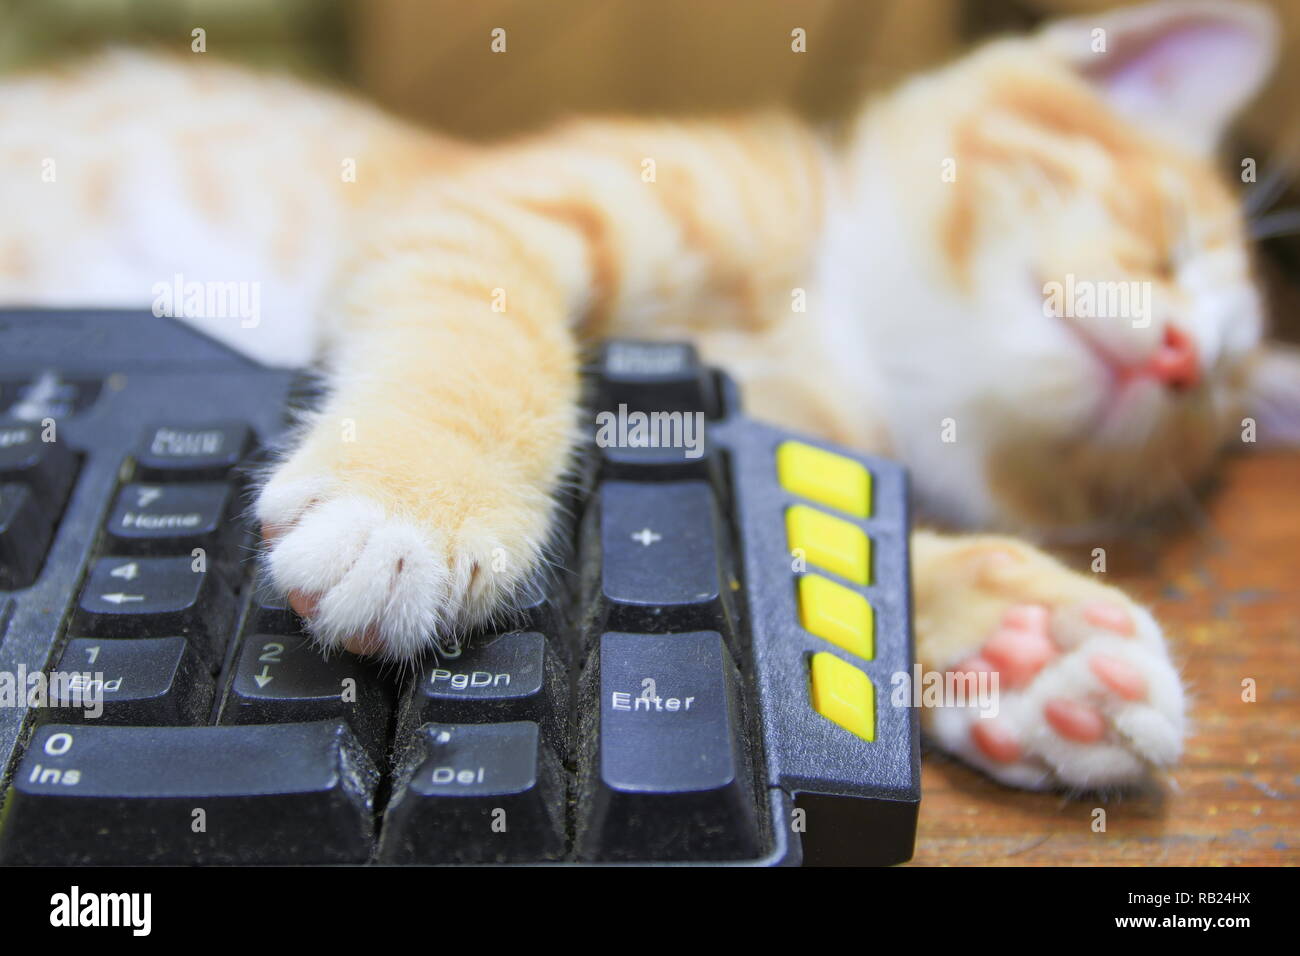 Gattino arancione di dormire sulla tastiera uso della tecnologia computer. concetto business Foto Stock